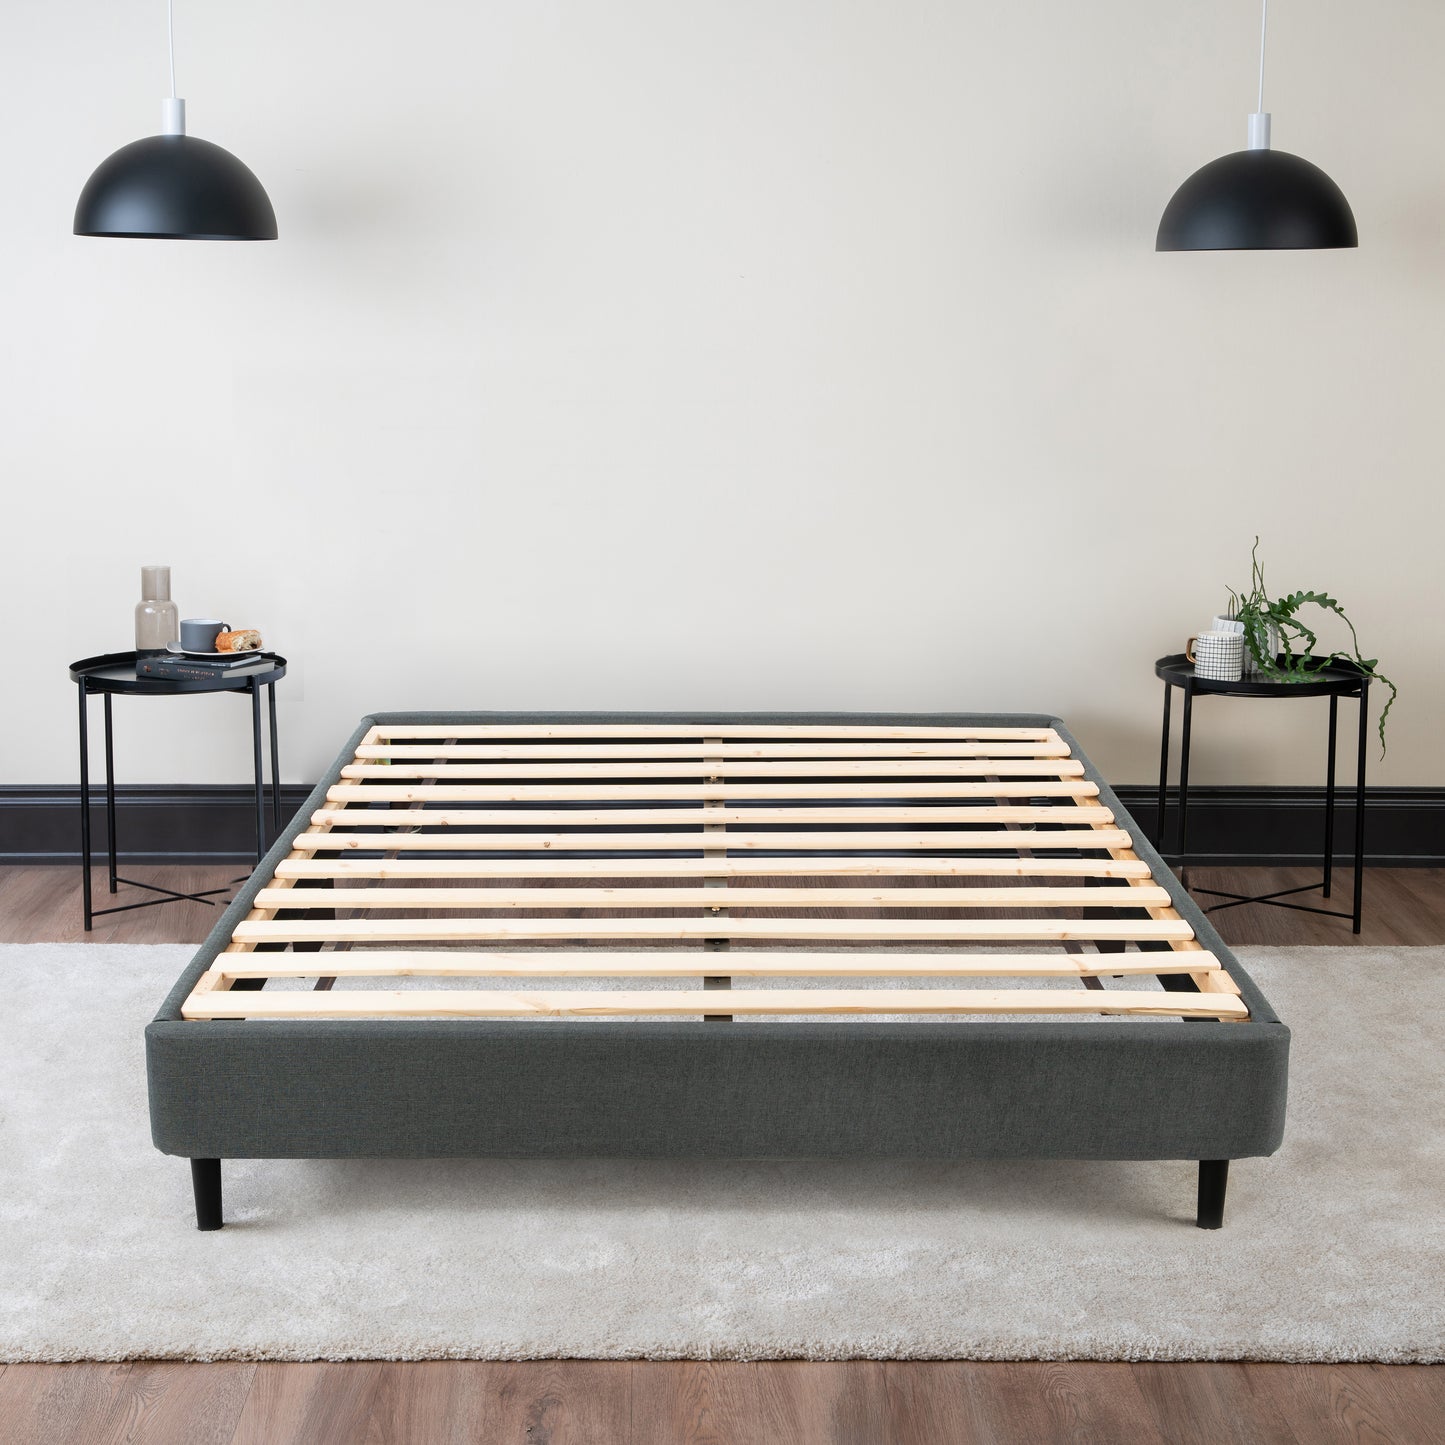 The Upholstered Platform Bed Frame